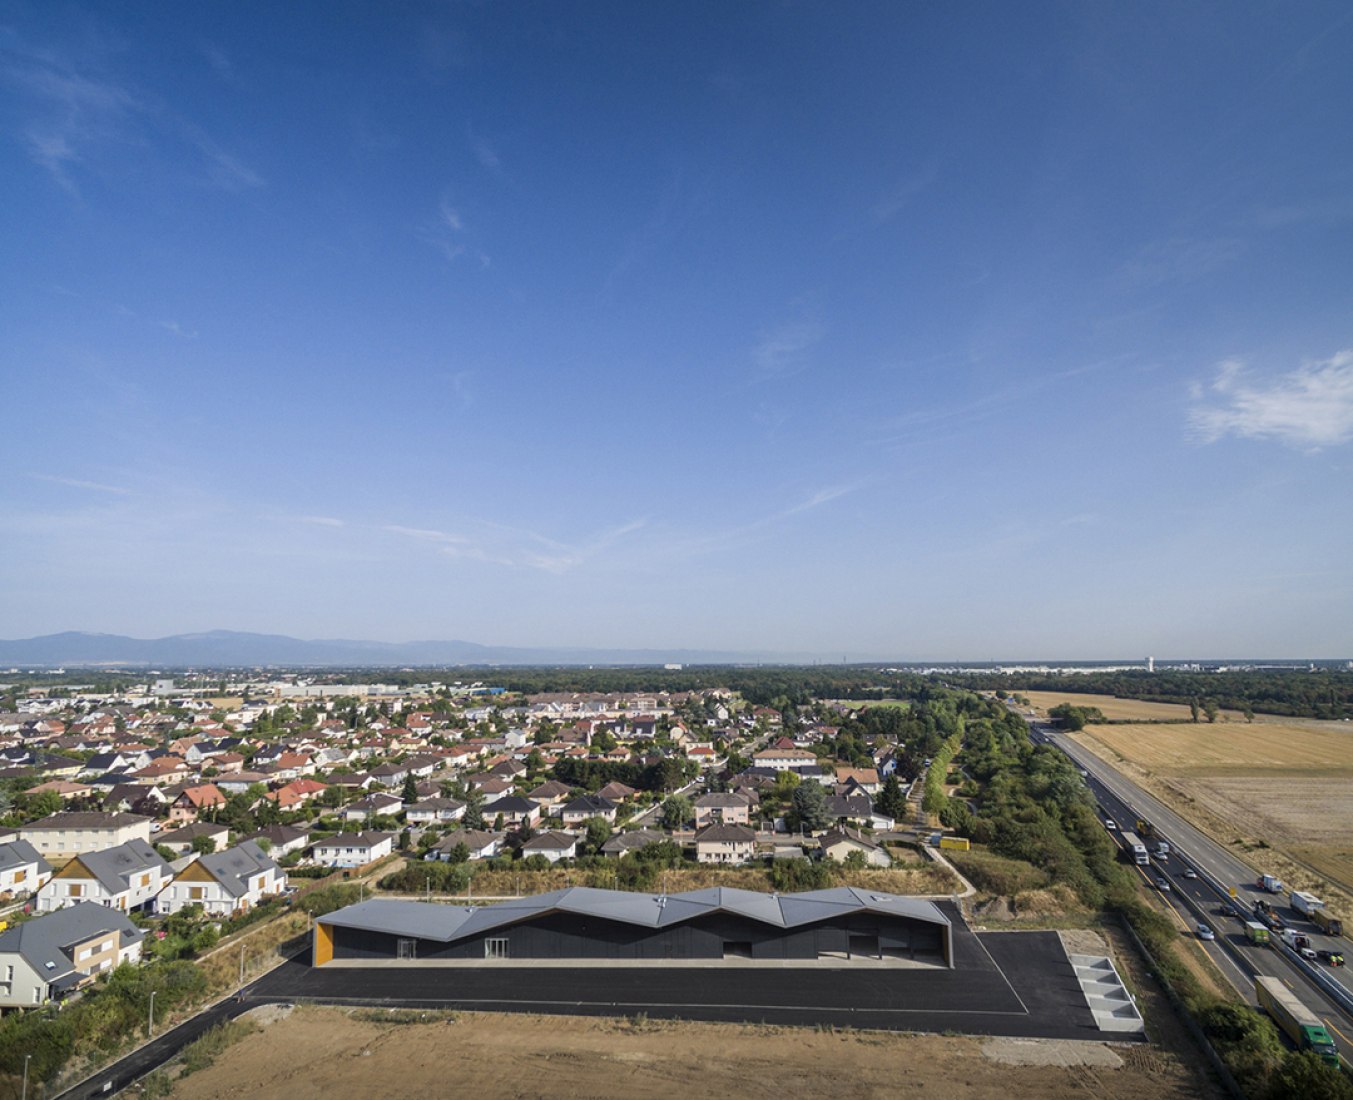 Imagen aérea del Centro Técnico en Rixheim por MFA Architects y Nicola Martinoli. Fotografía © Fernando Guerra.